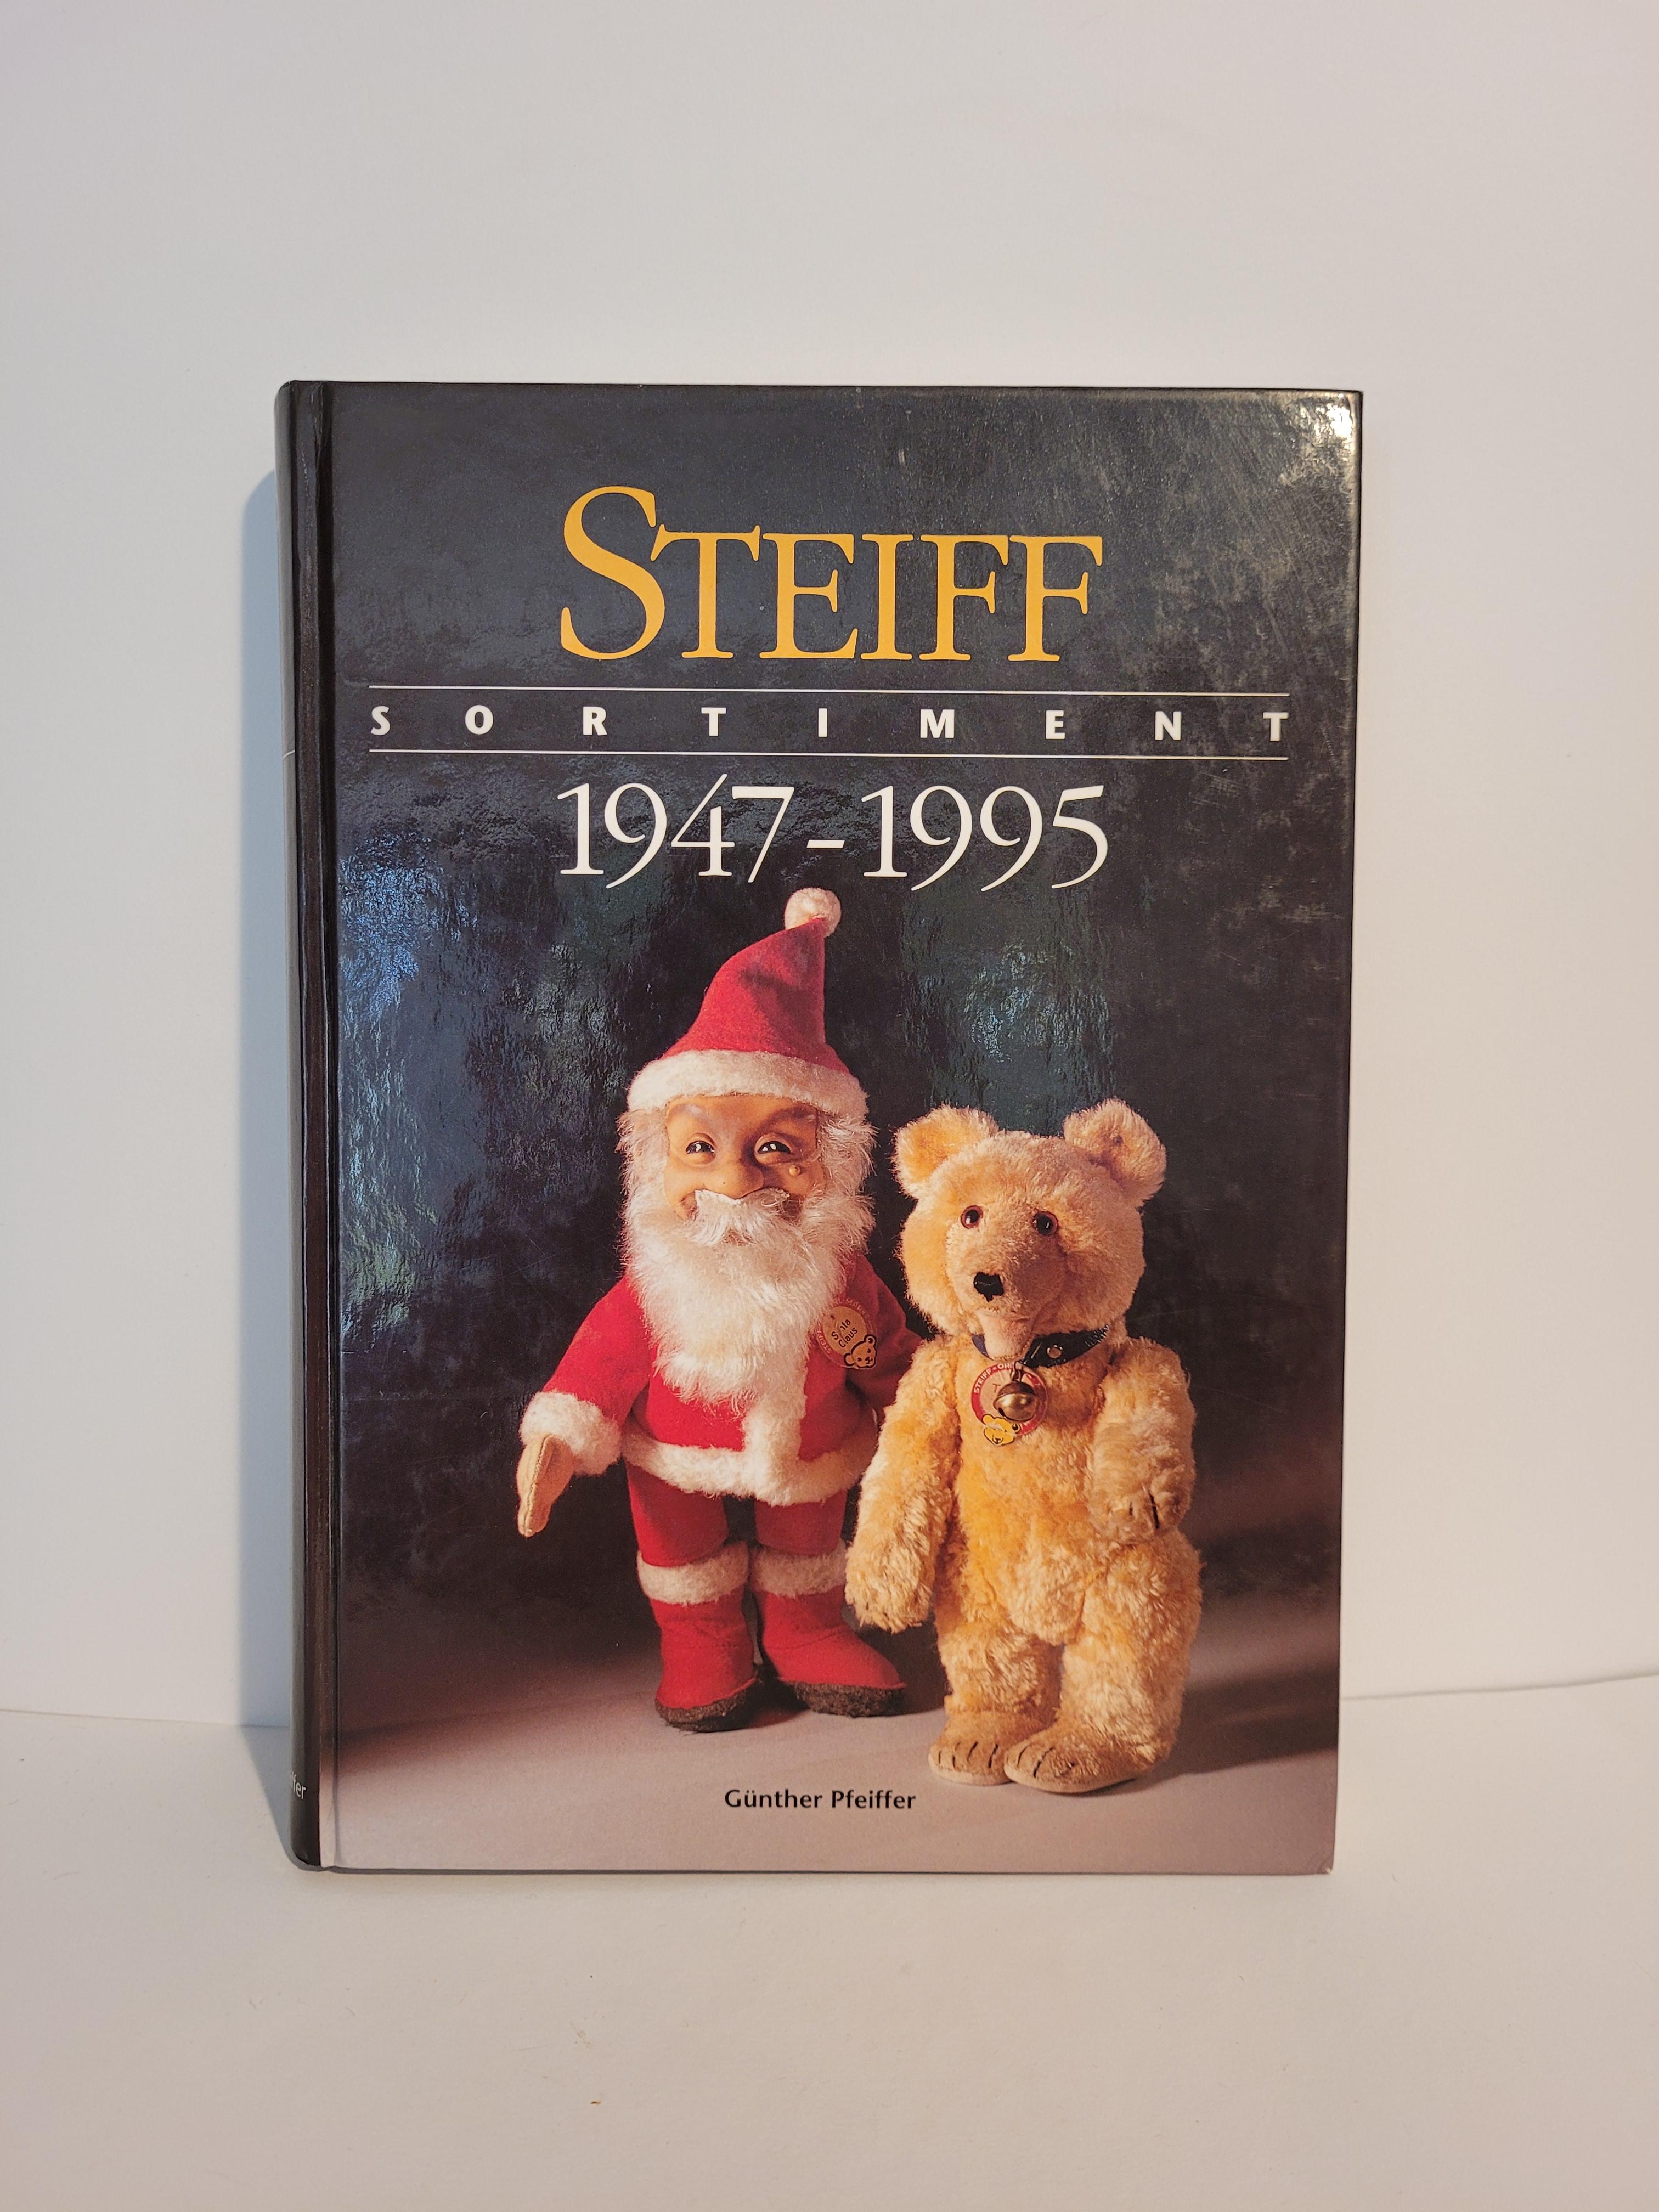 Steiff Buch Sortiment 1947 – 1995